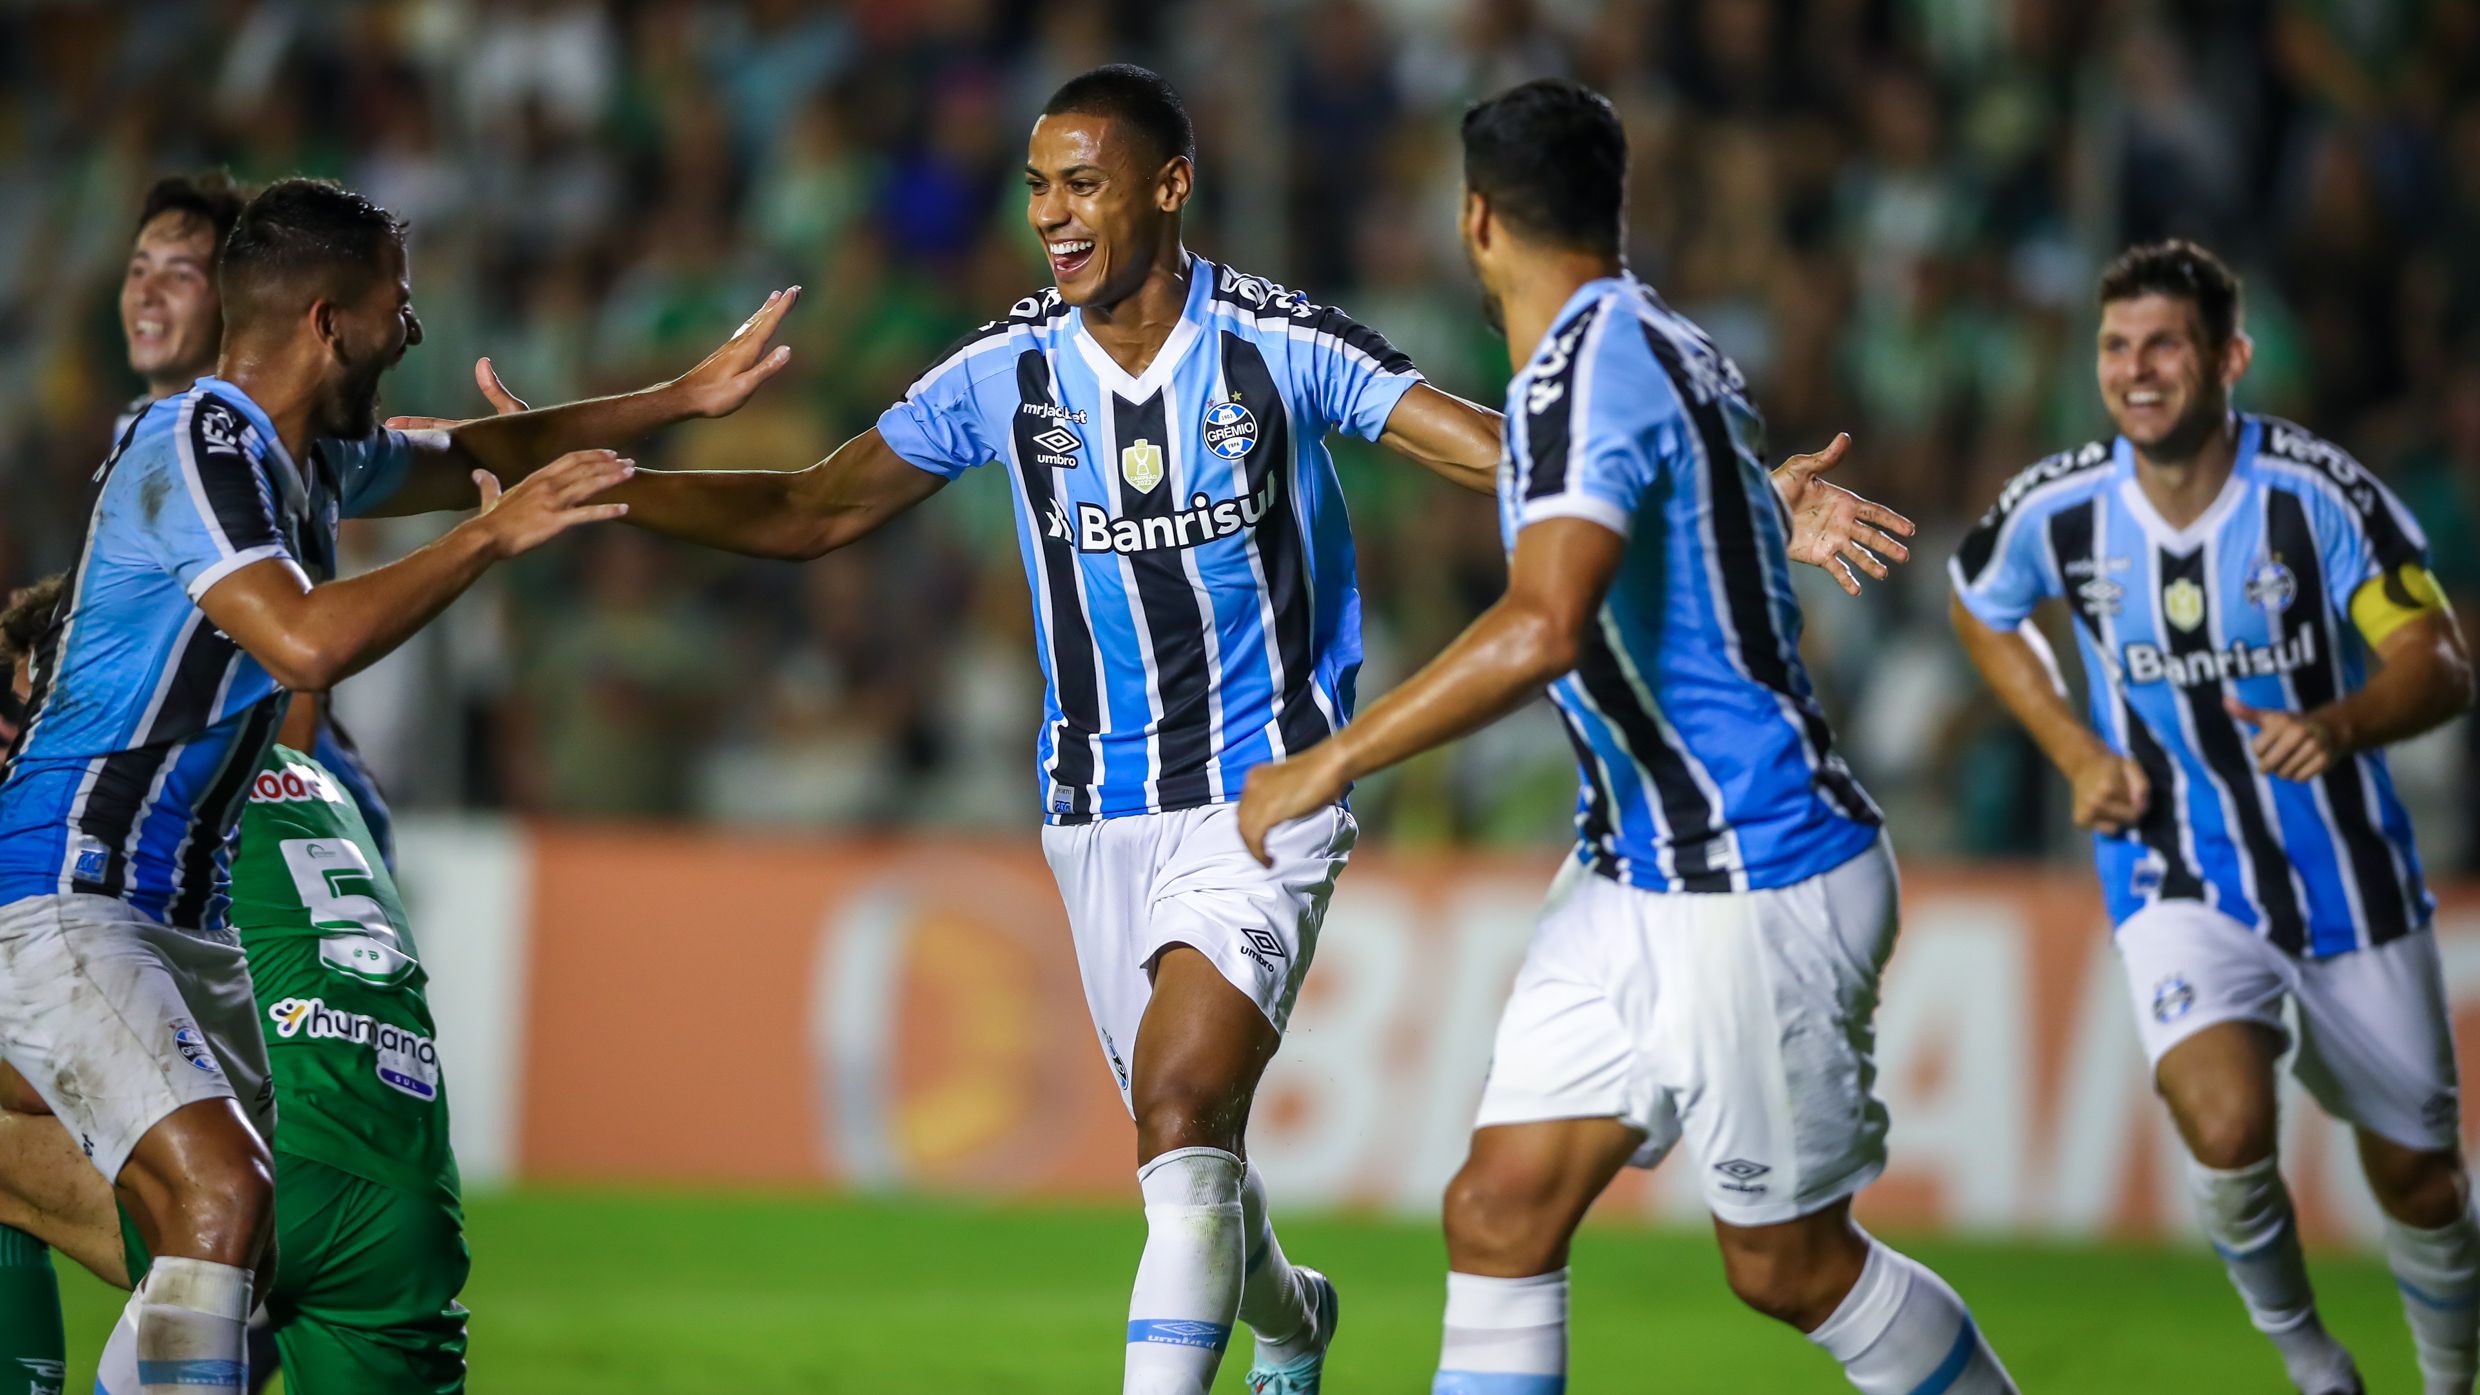 Grêmio vs Ituano: A Clash of Titans on the Field